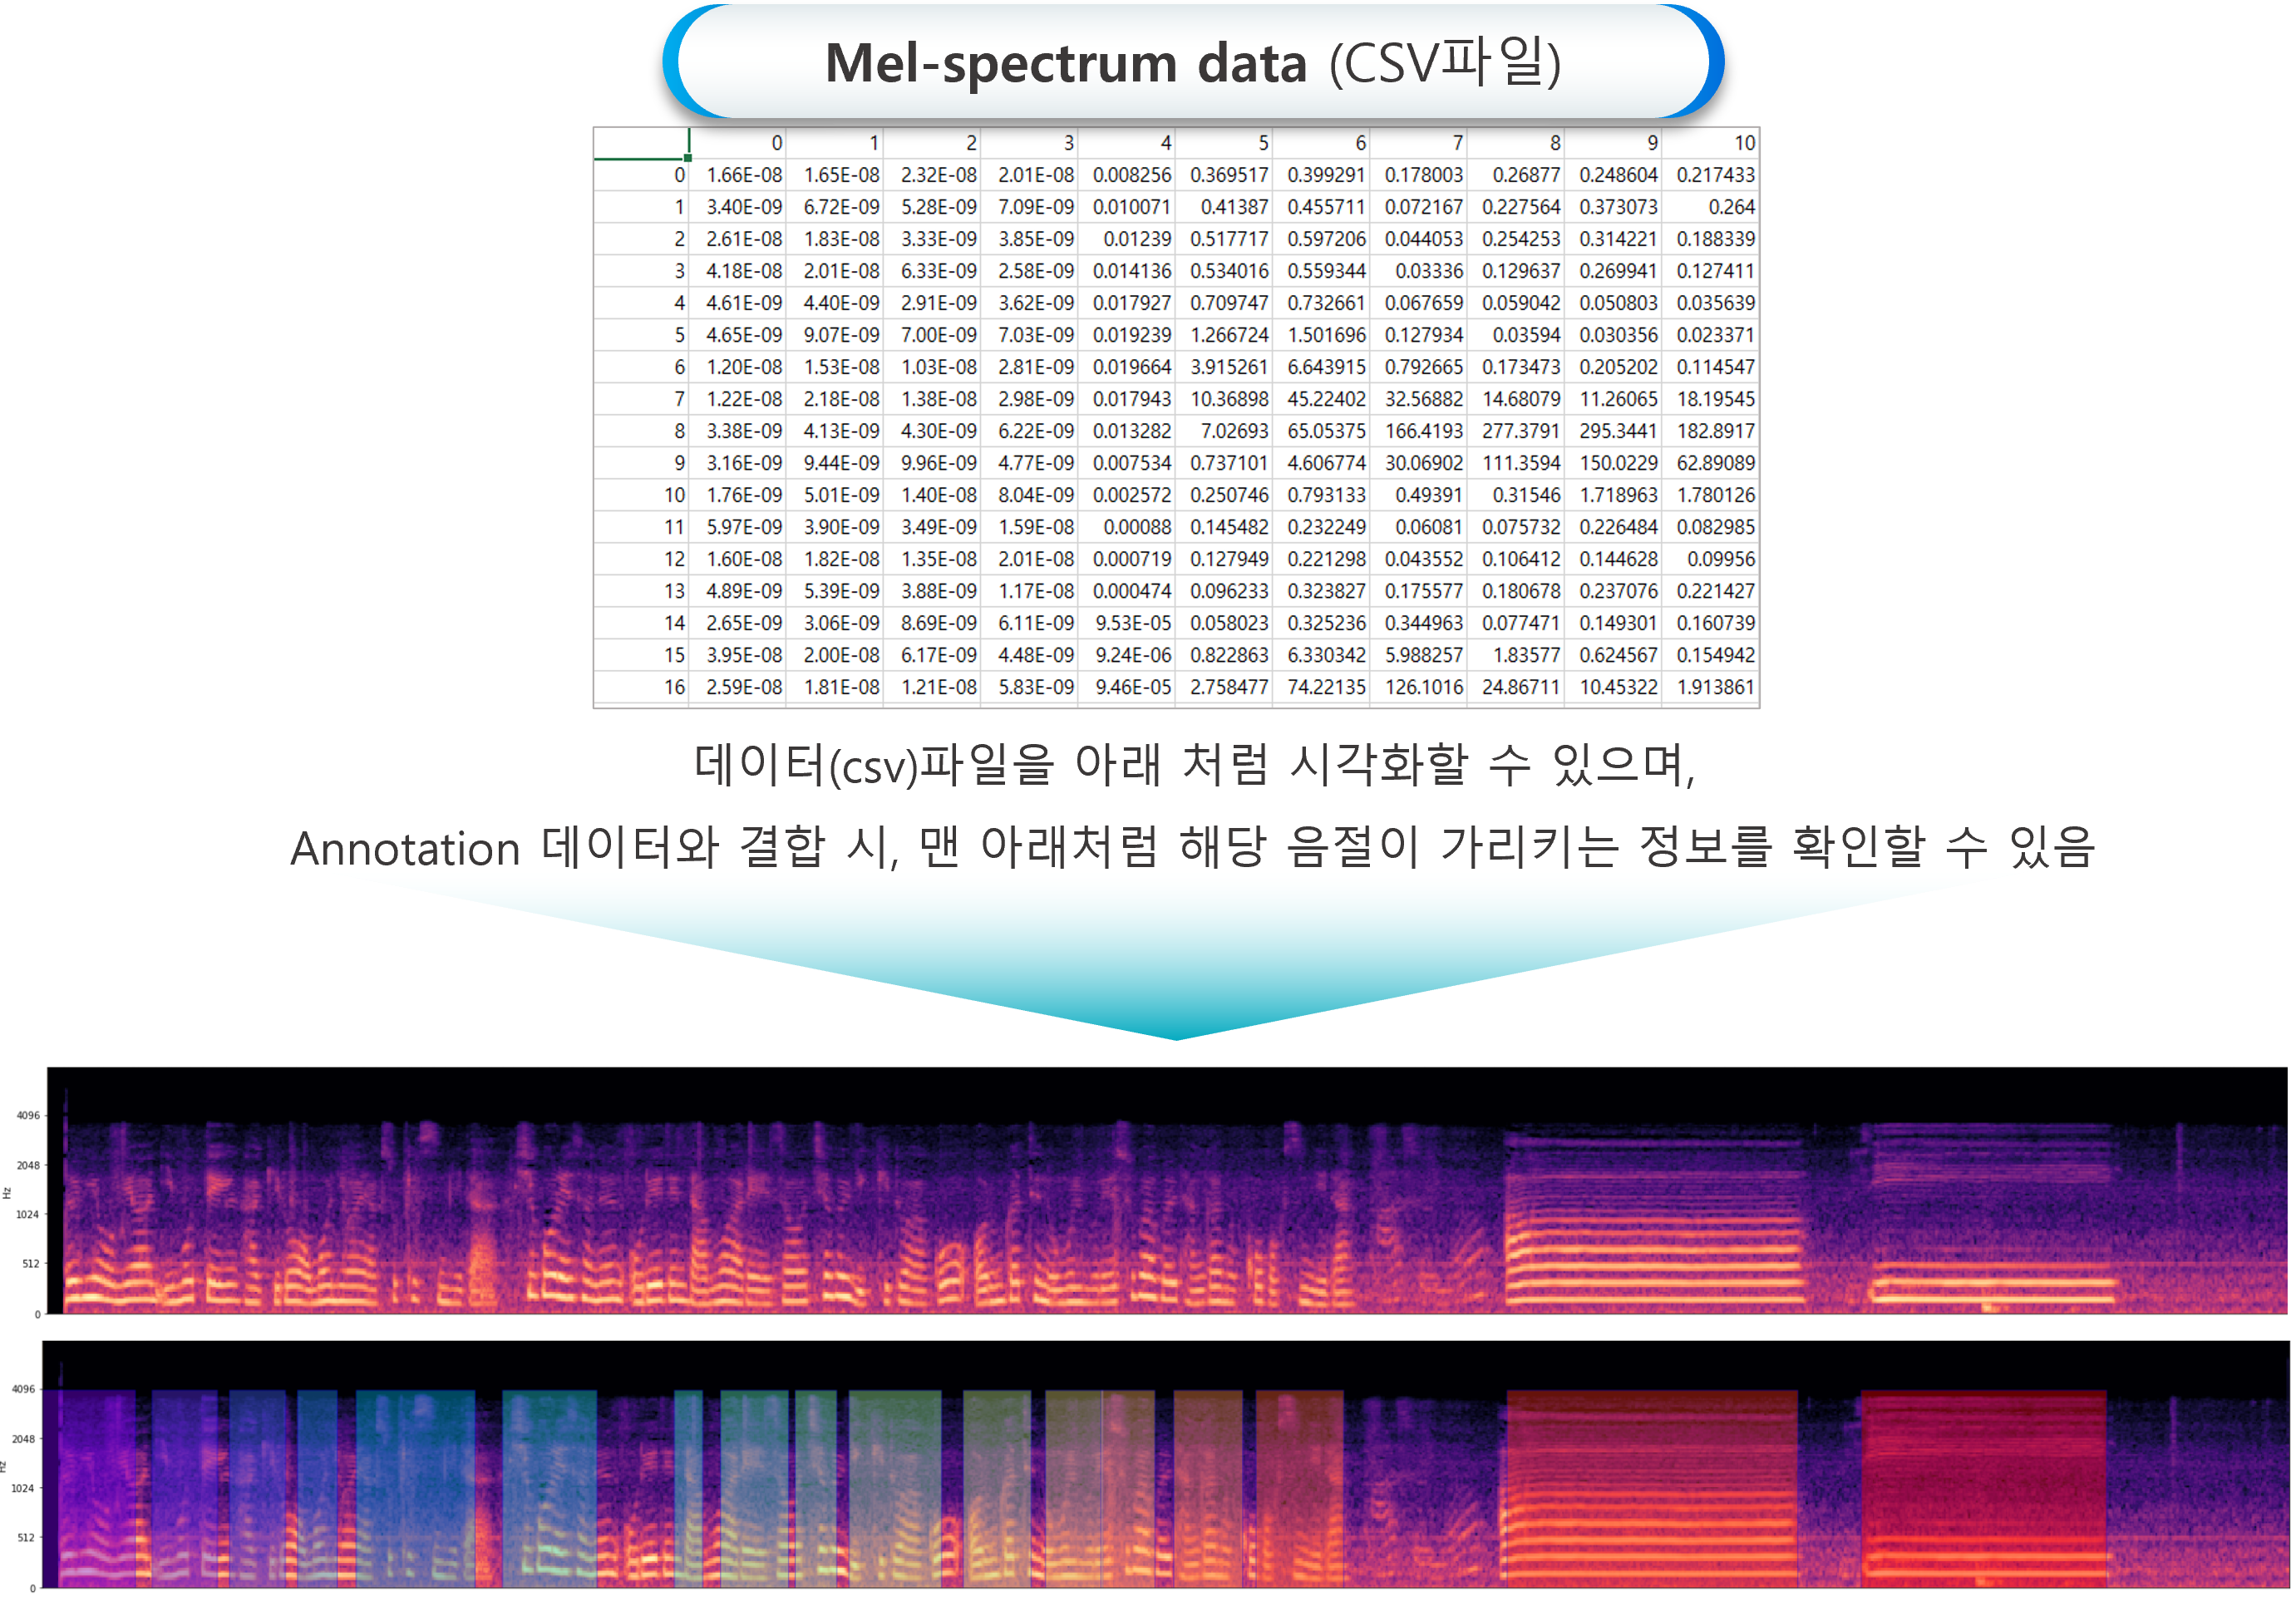 음성질환 판별을 위한 음성-표준 문장, /아/, /이/ 모음으로 구성된 음성데이터로부터 멜-스펙트럼 변환된 원천데이터(CSV)_1